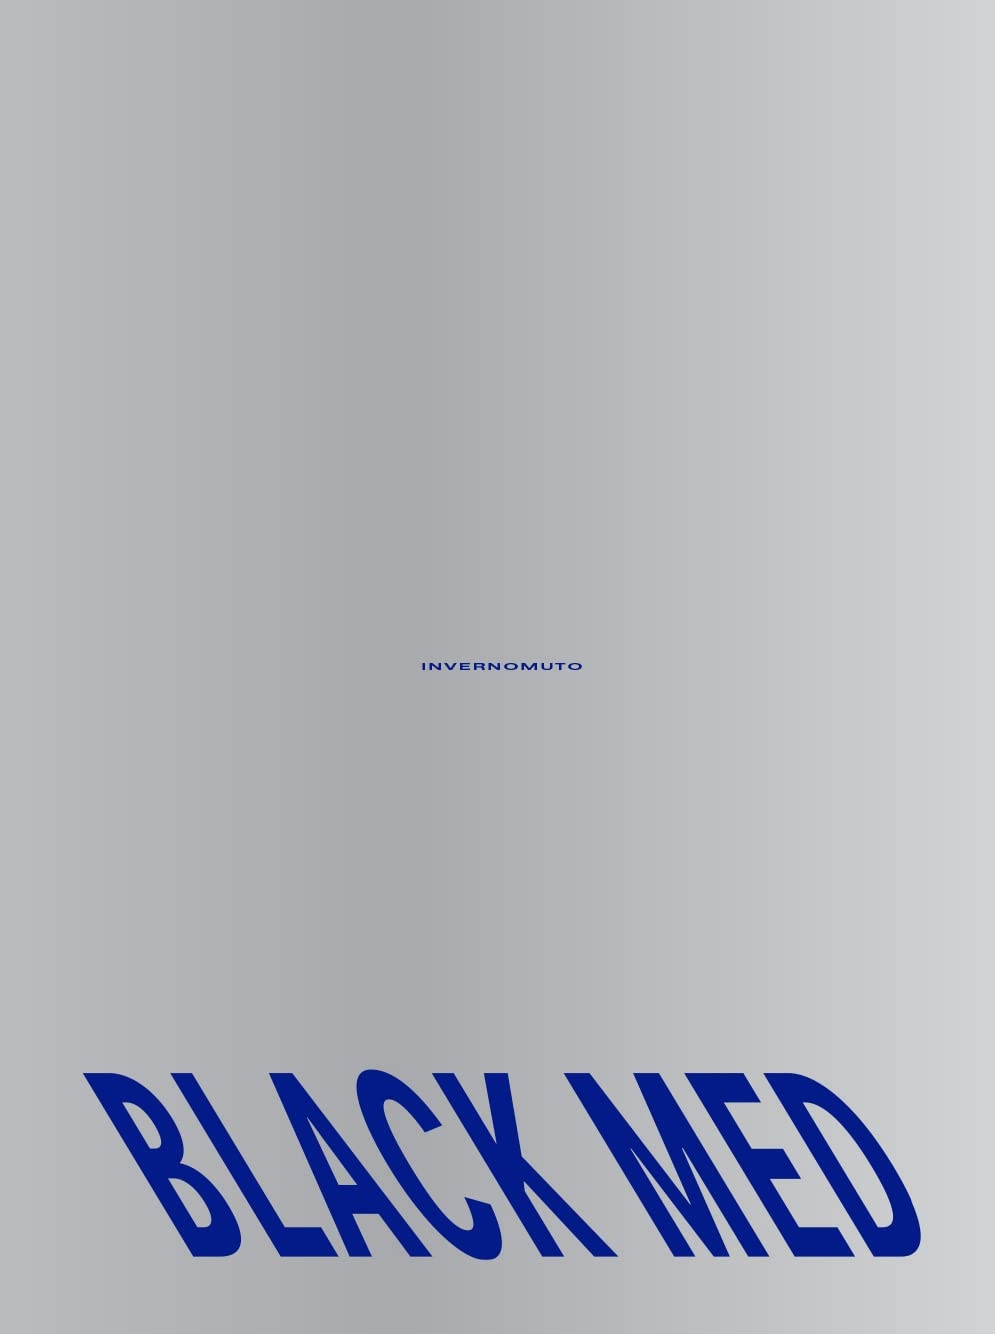 Invernomuto (a cura di) – Black Med (Humboldt Books, Milano 2022)